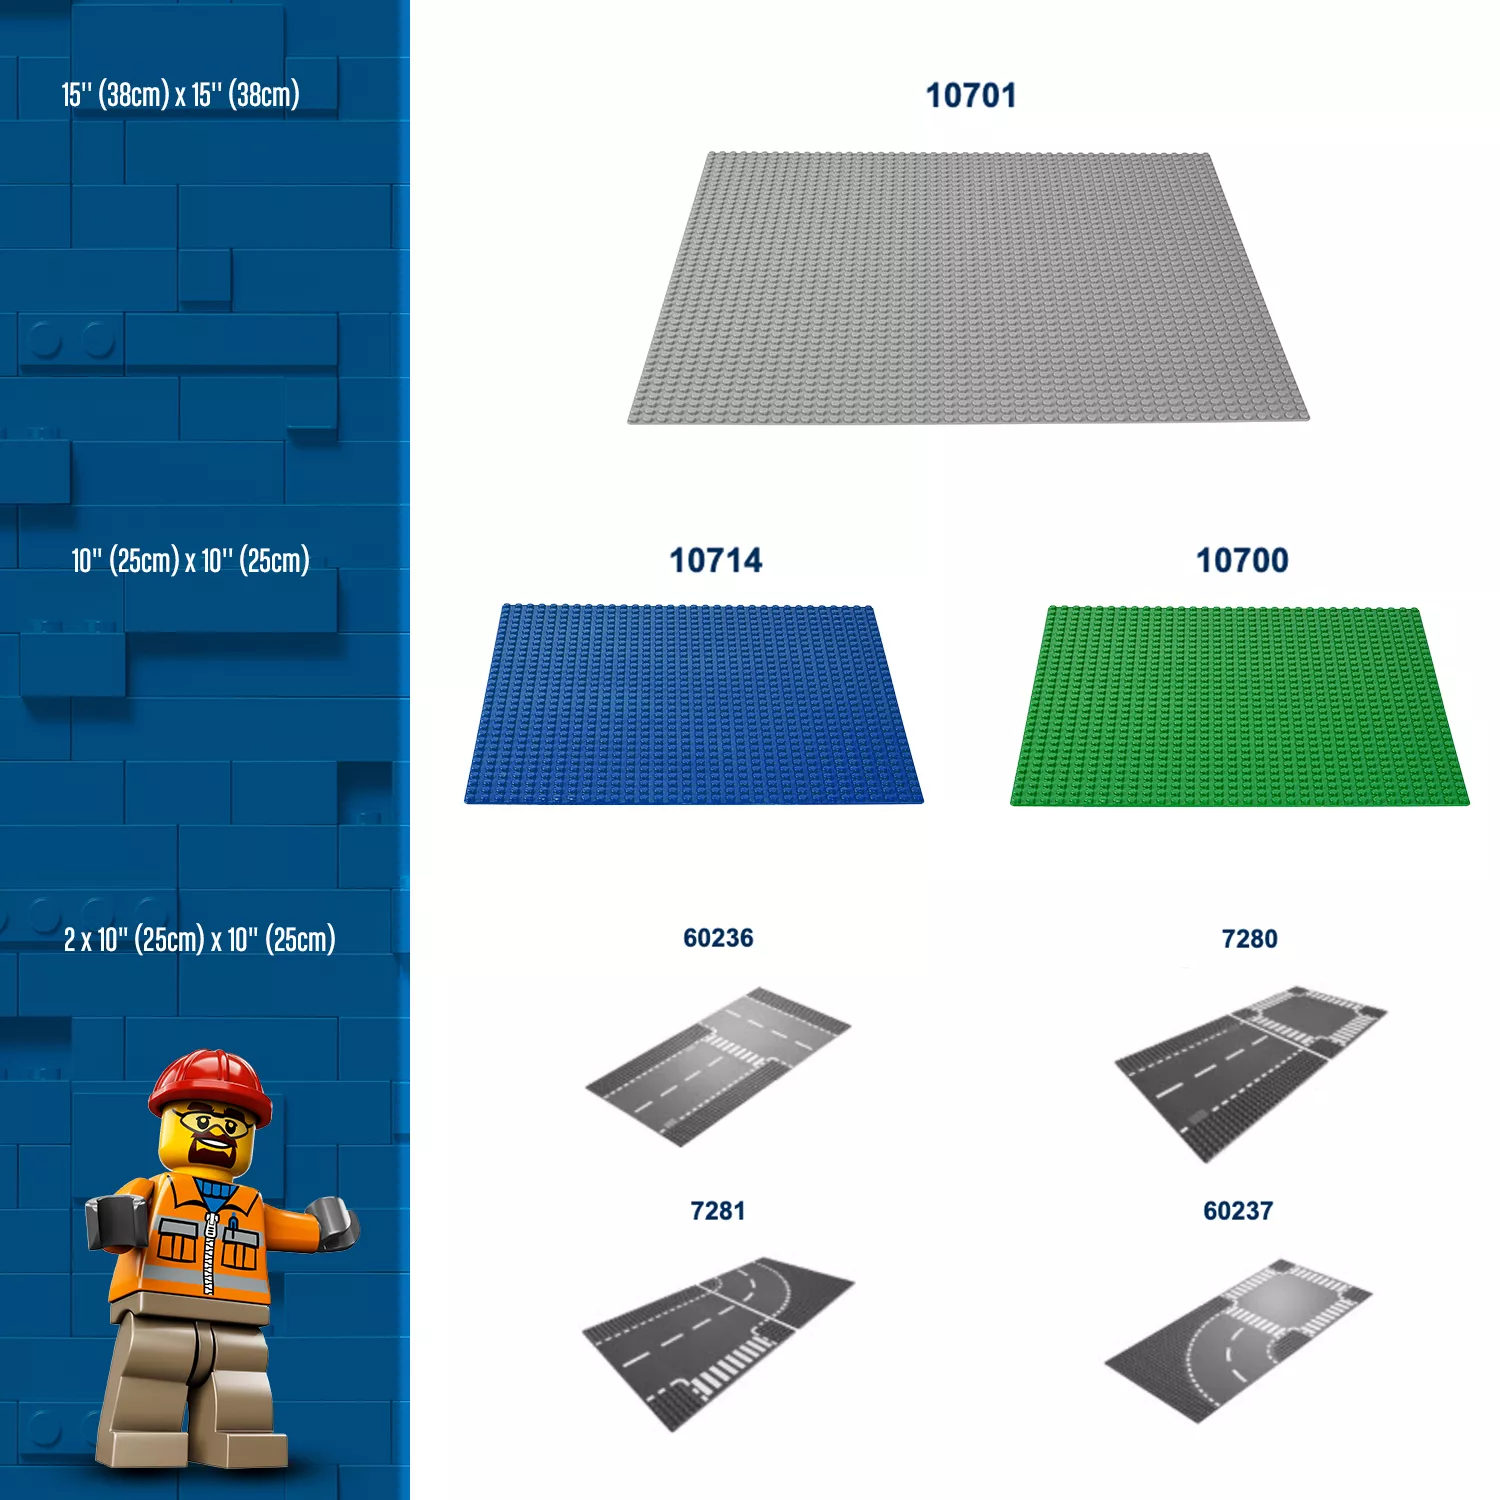 LEGO Classic Blaue Bauplatte